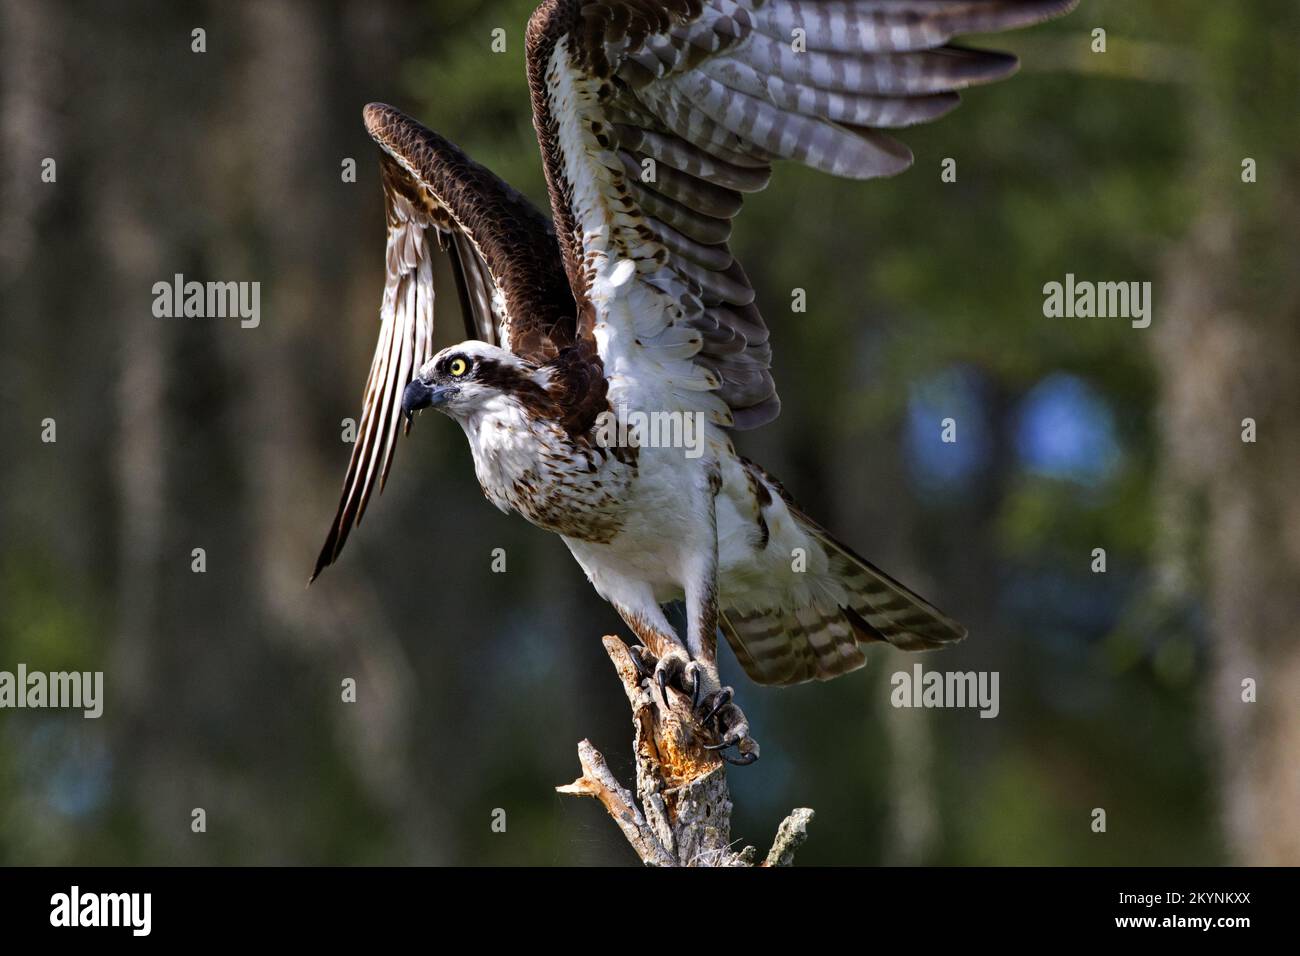 Il bellissimo falco pescatore alza le ali per salire e volare al lago Blue Cypress nella Indian River County, Florida. Immagine verticale con spazio di copia ai lati. Foto Stock